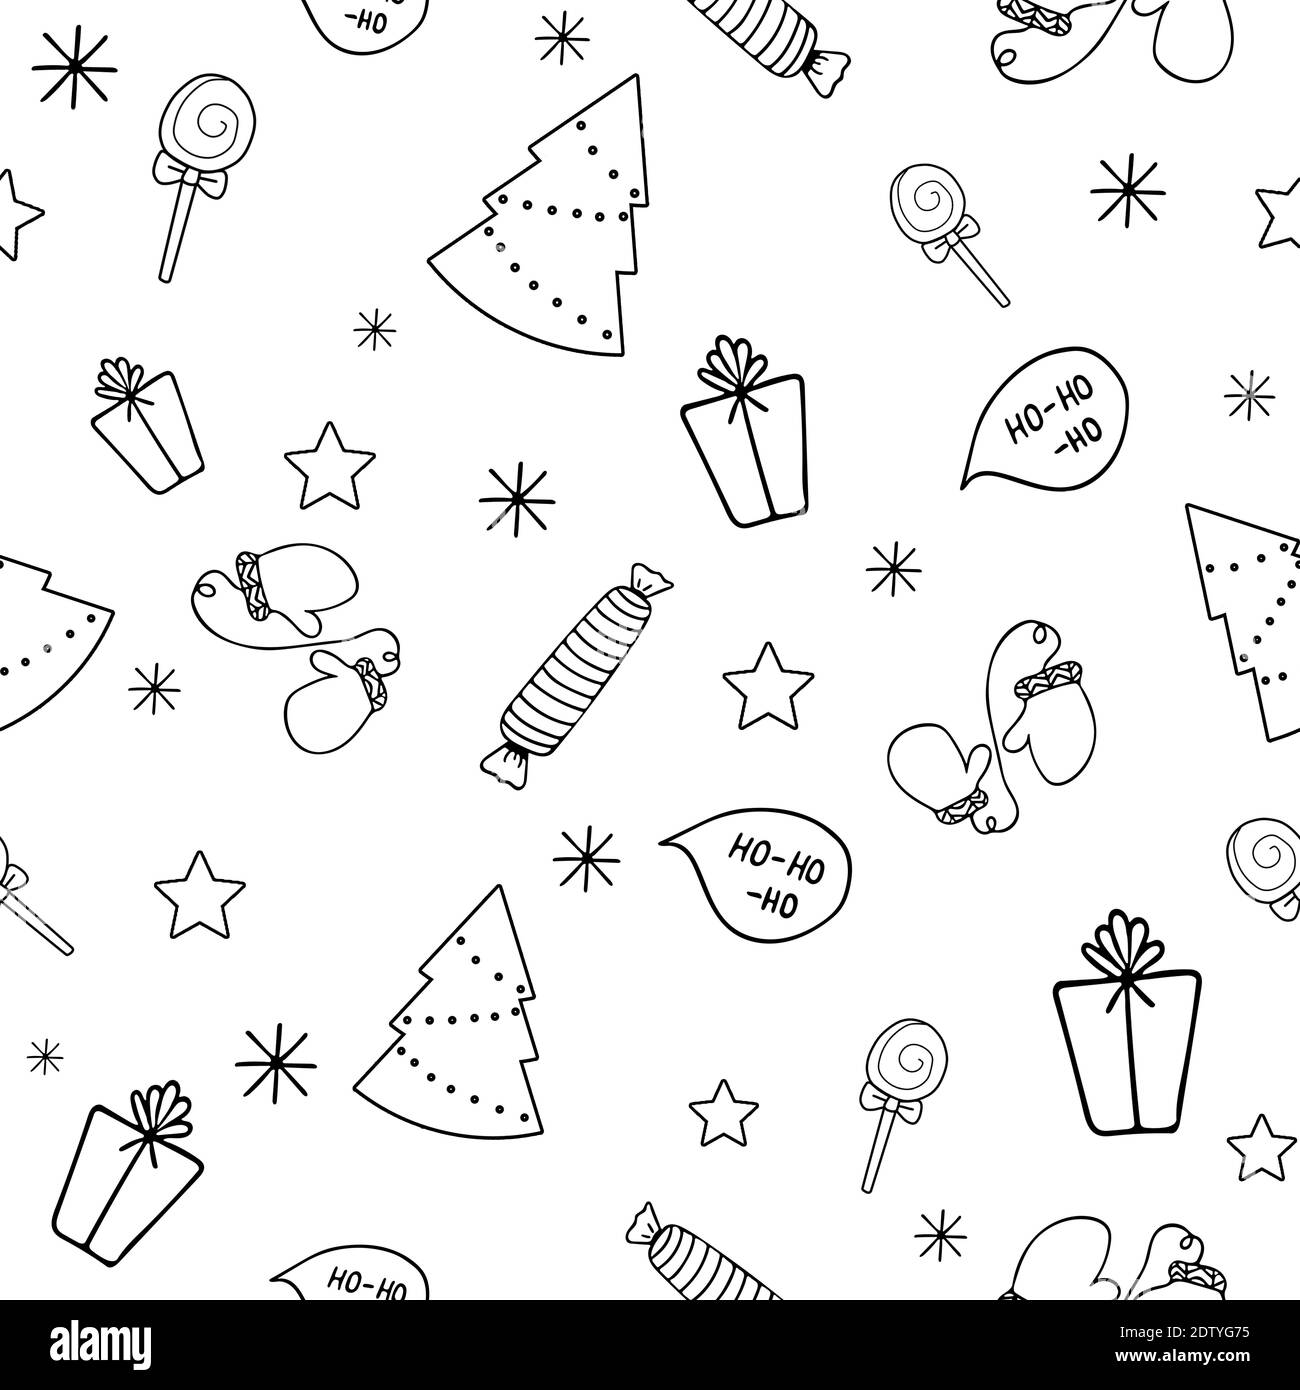 Weihnachten nahtlose schwarz-weiß-Muster mit Geschenk, weihnachtsbaum, Süßigkeiten, Handschuhe, Stern, Schneeflocke Urlaub Ikonen, Silvester Feier Elemente. Des Stockfoto